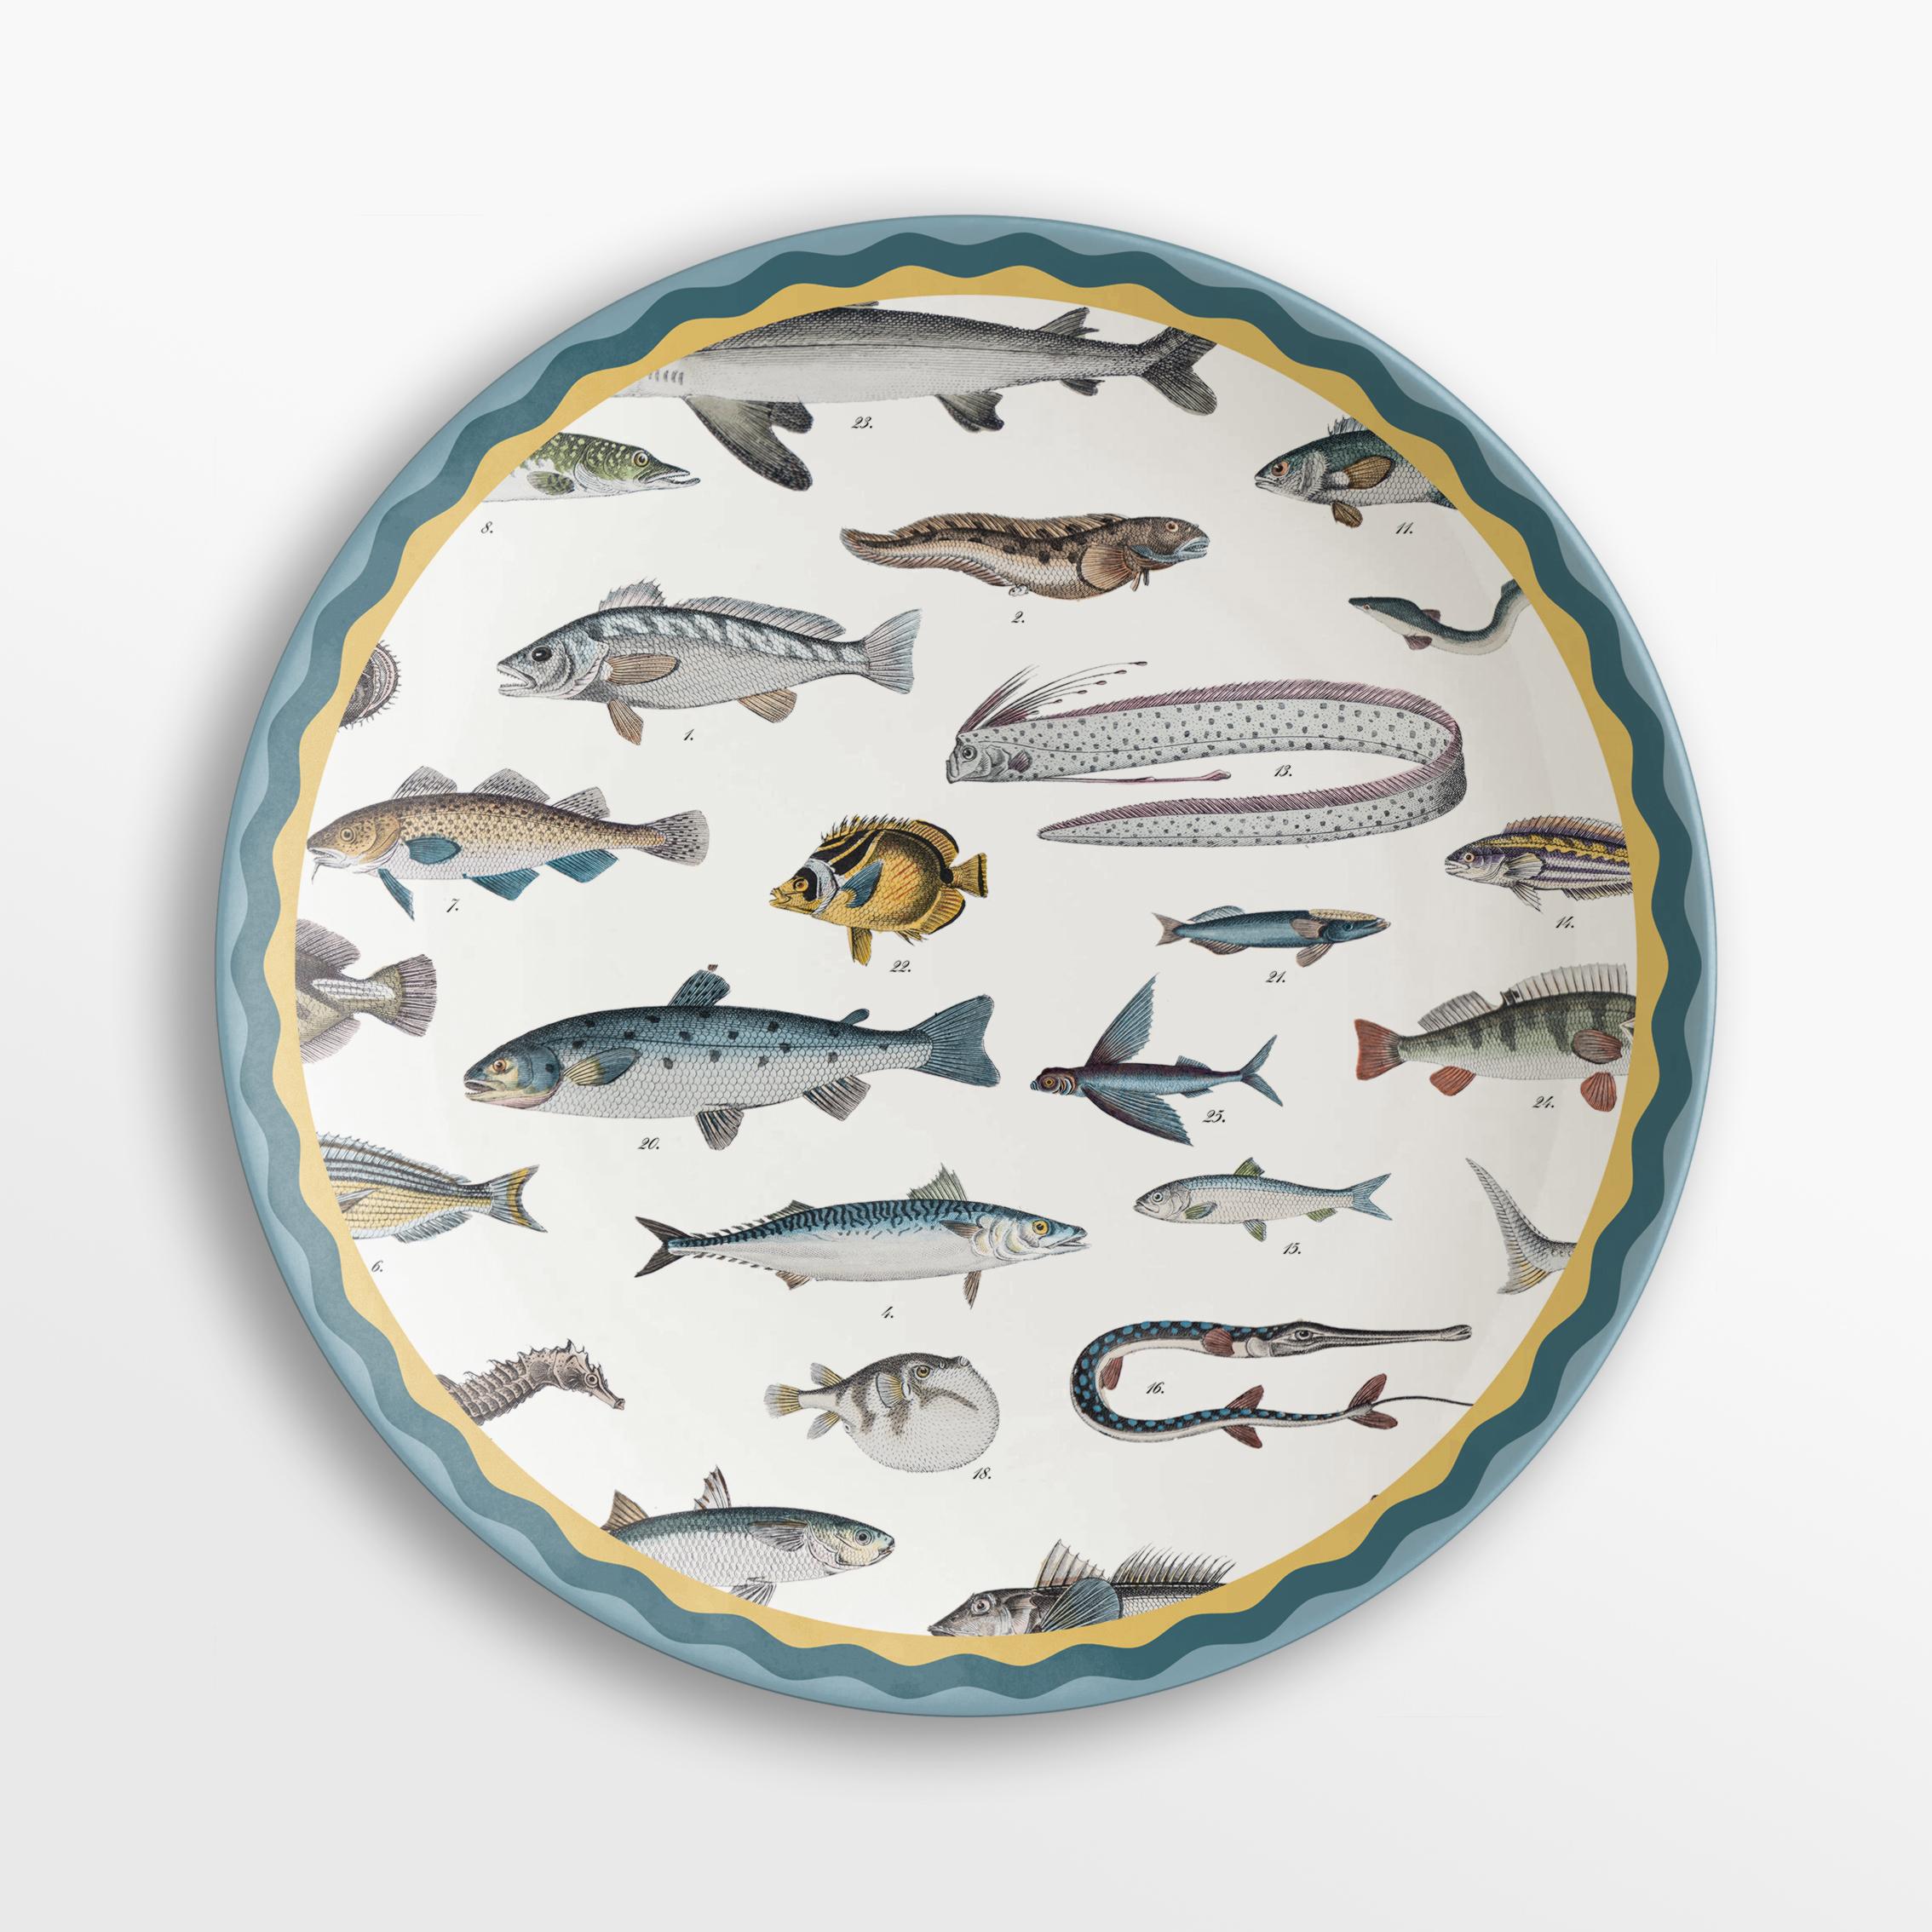 Cabinet de Curiosités, Six Contemporary Decorated Porcelain Dinner Plates For Sale 1